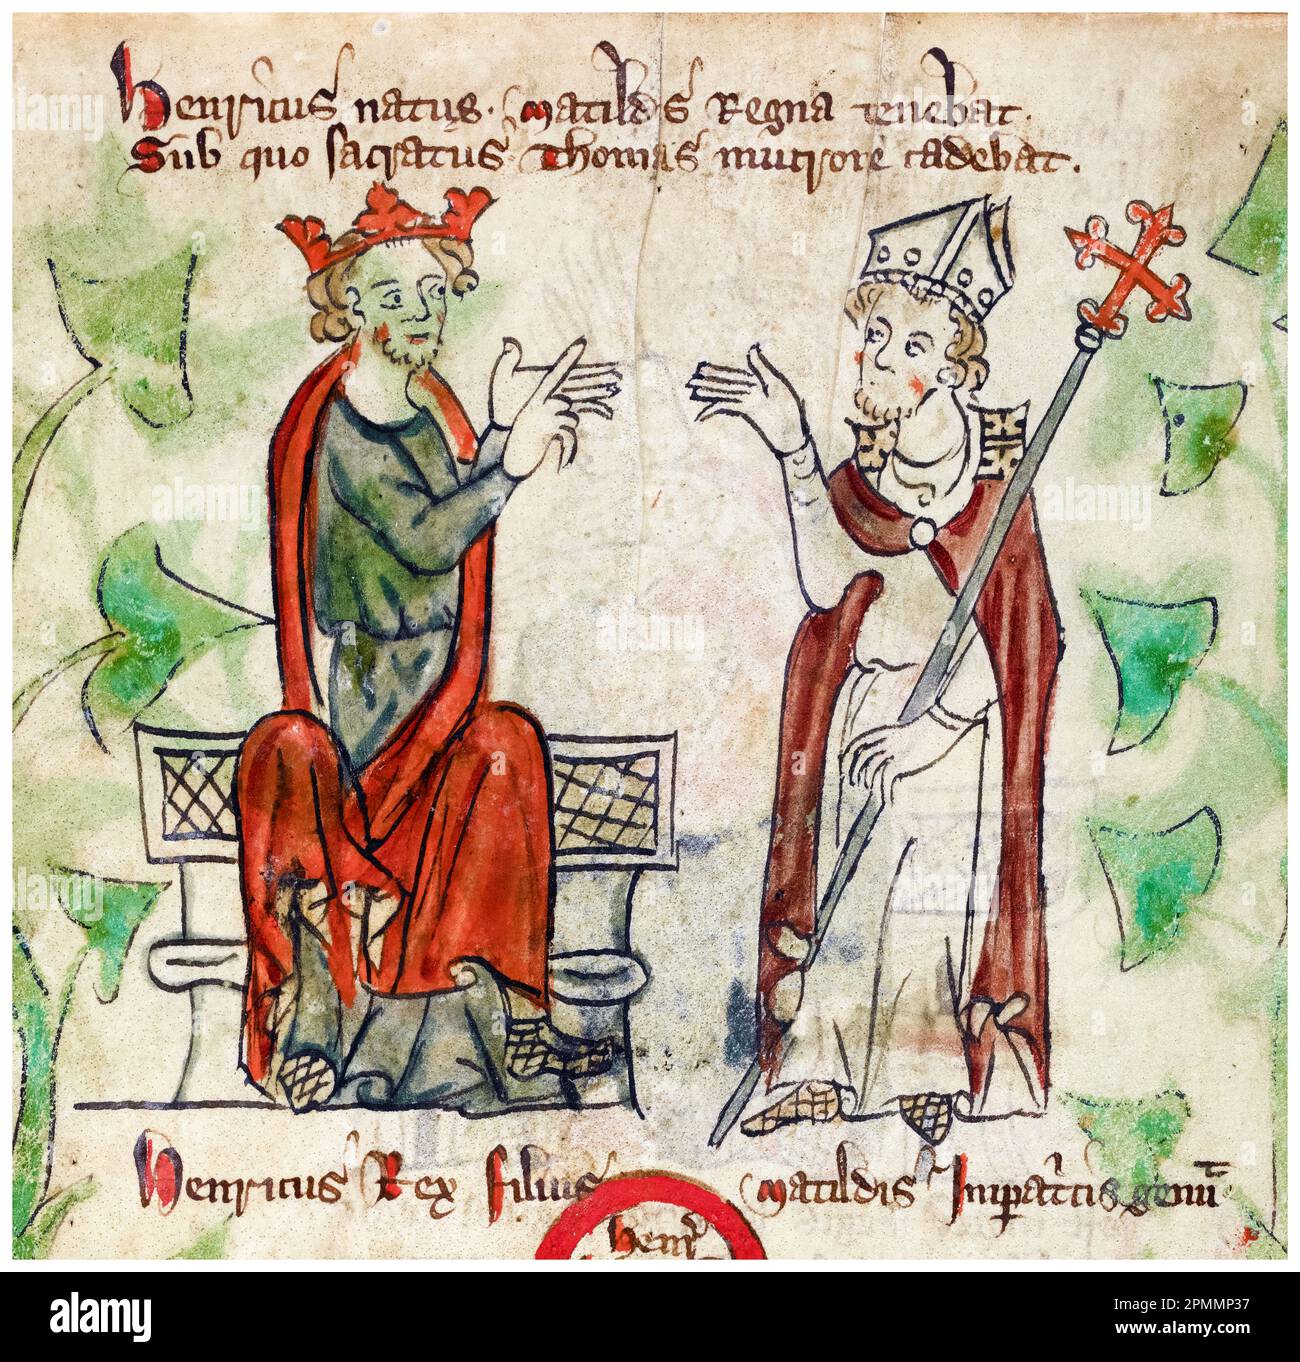 Le roi Henri II d'Angleterre (1133-1189) et Thomas Becket (1119/20-1170) Archevêque de Canterbury, peinture manuscrite illuminée par Pierre de Langtoft, 1307-1327 Banque D'Images